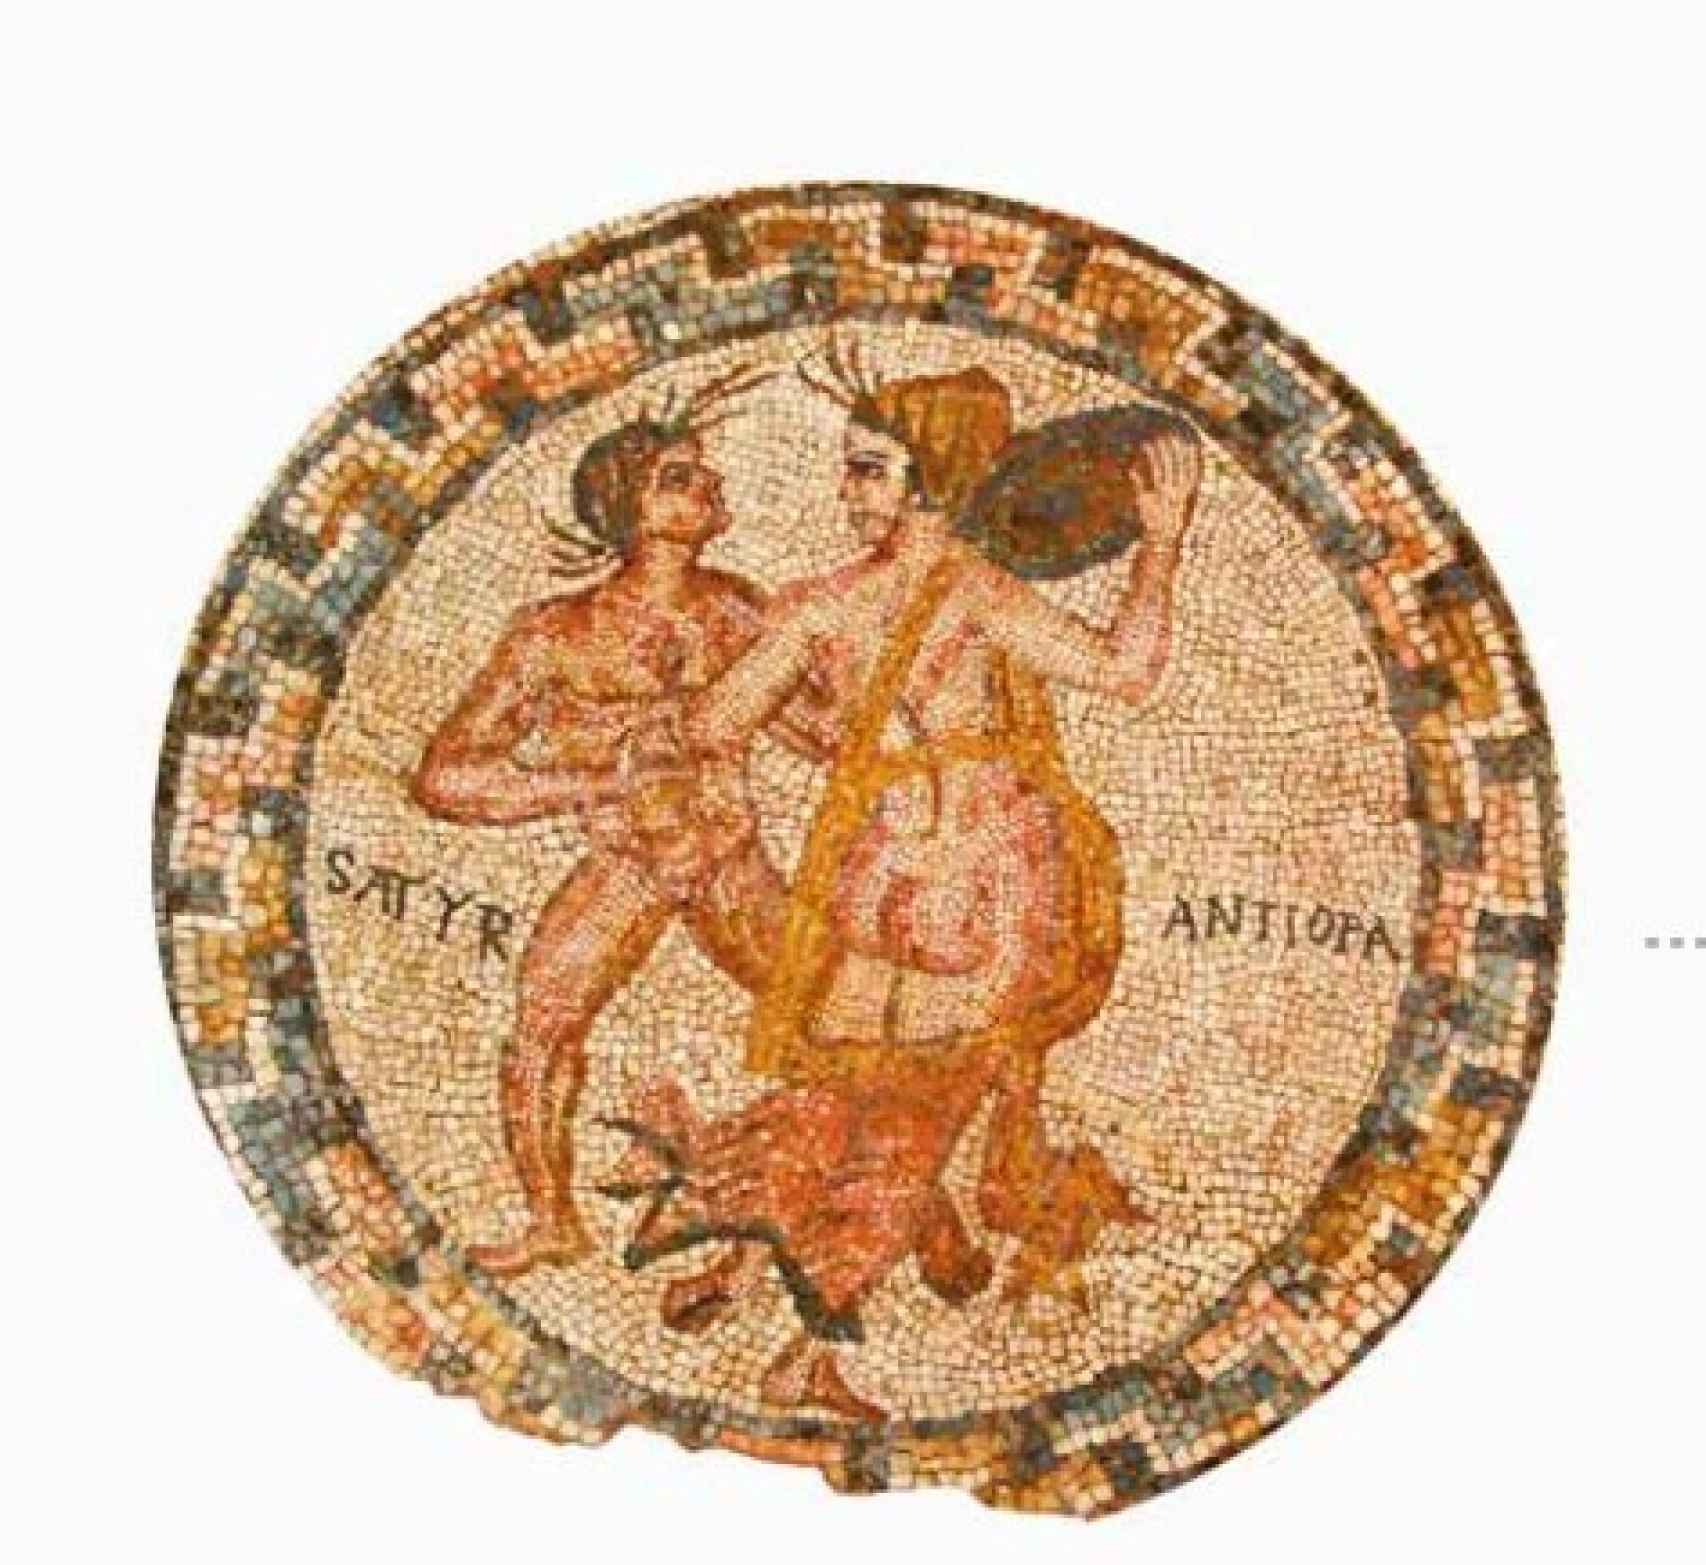 Mosaico de Satyr y Antiopa.